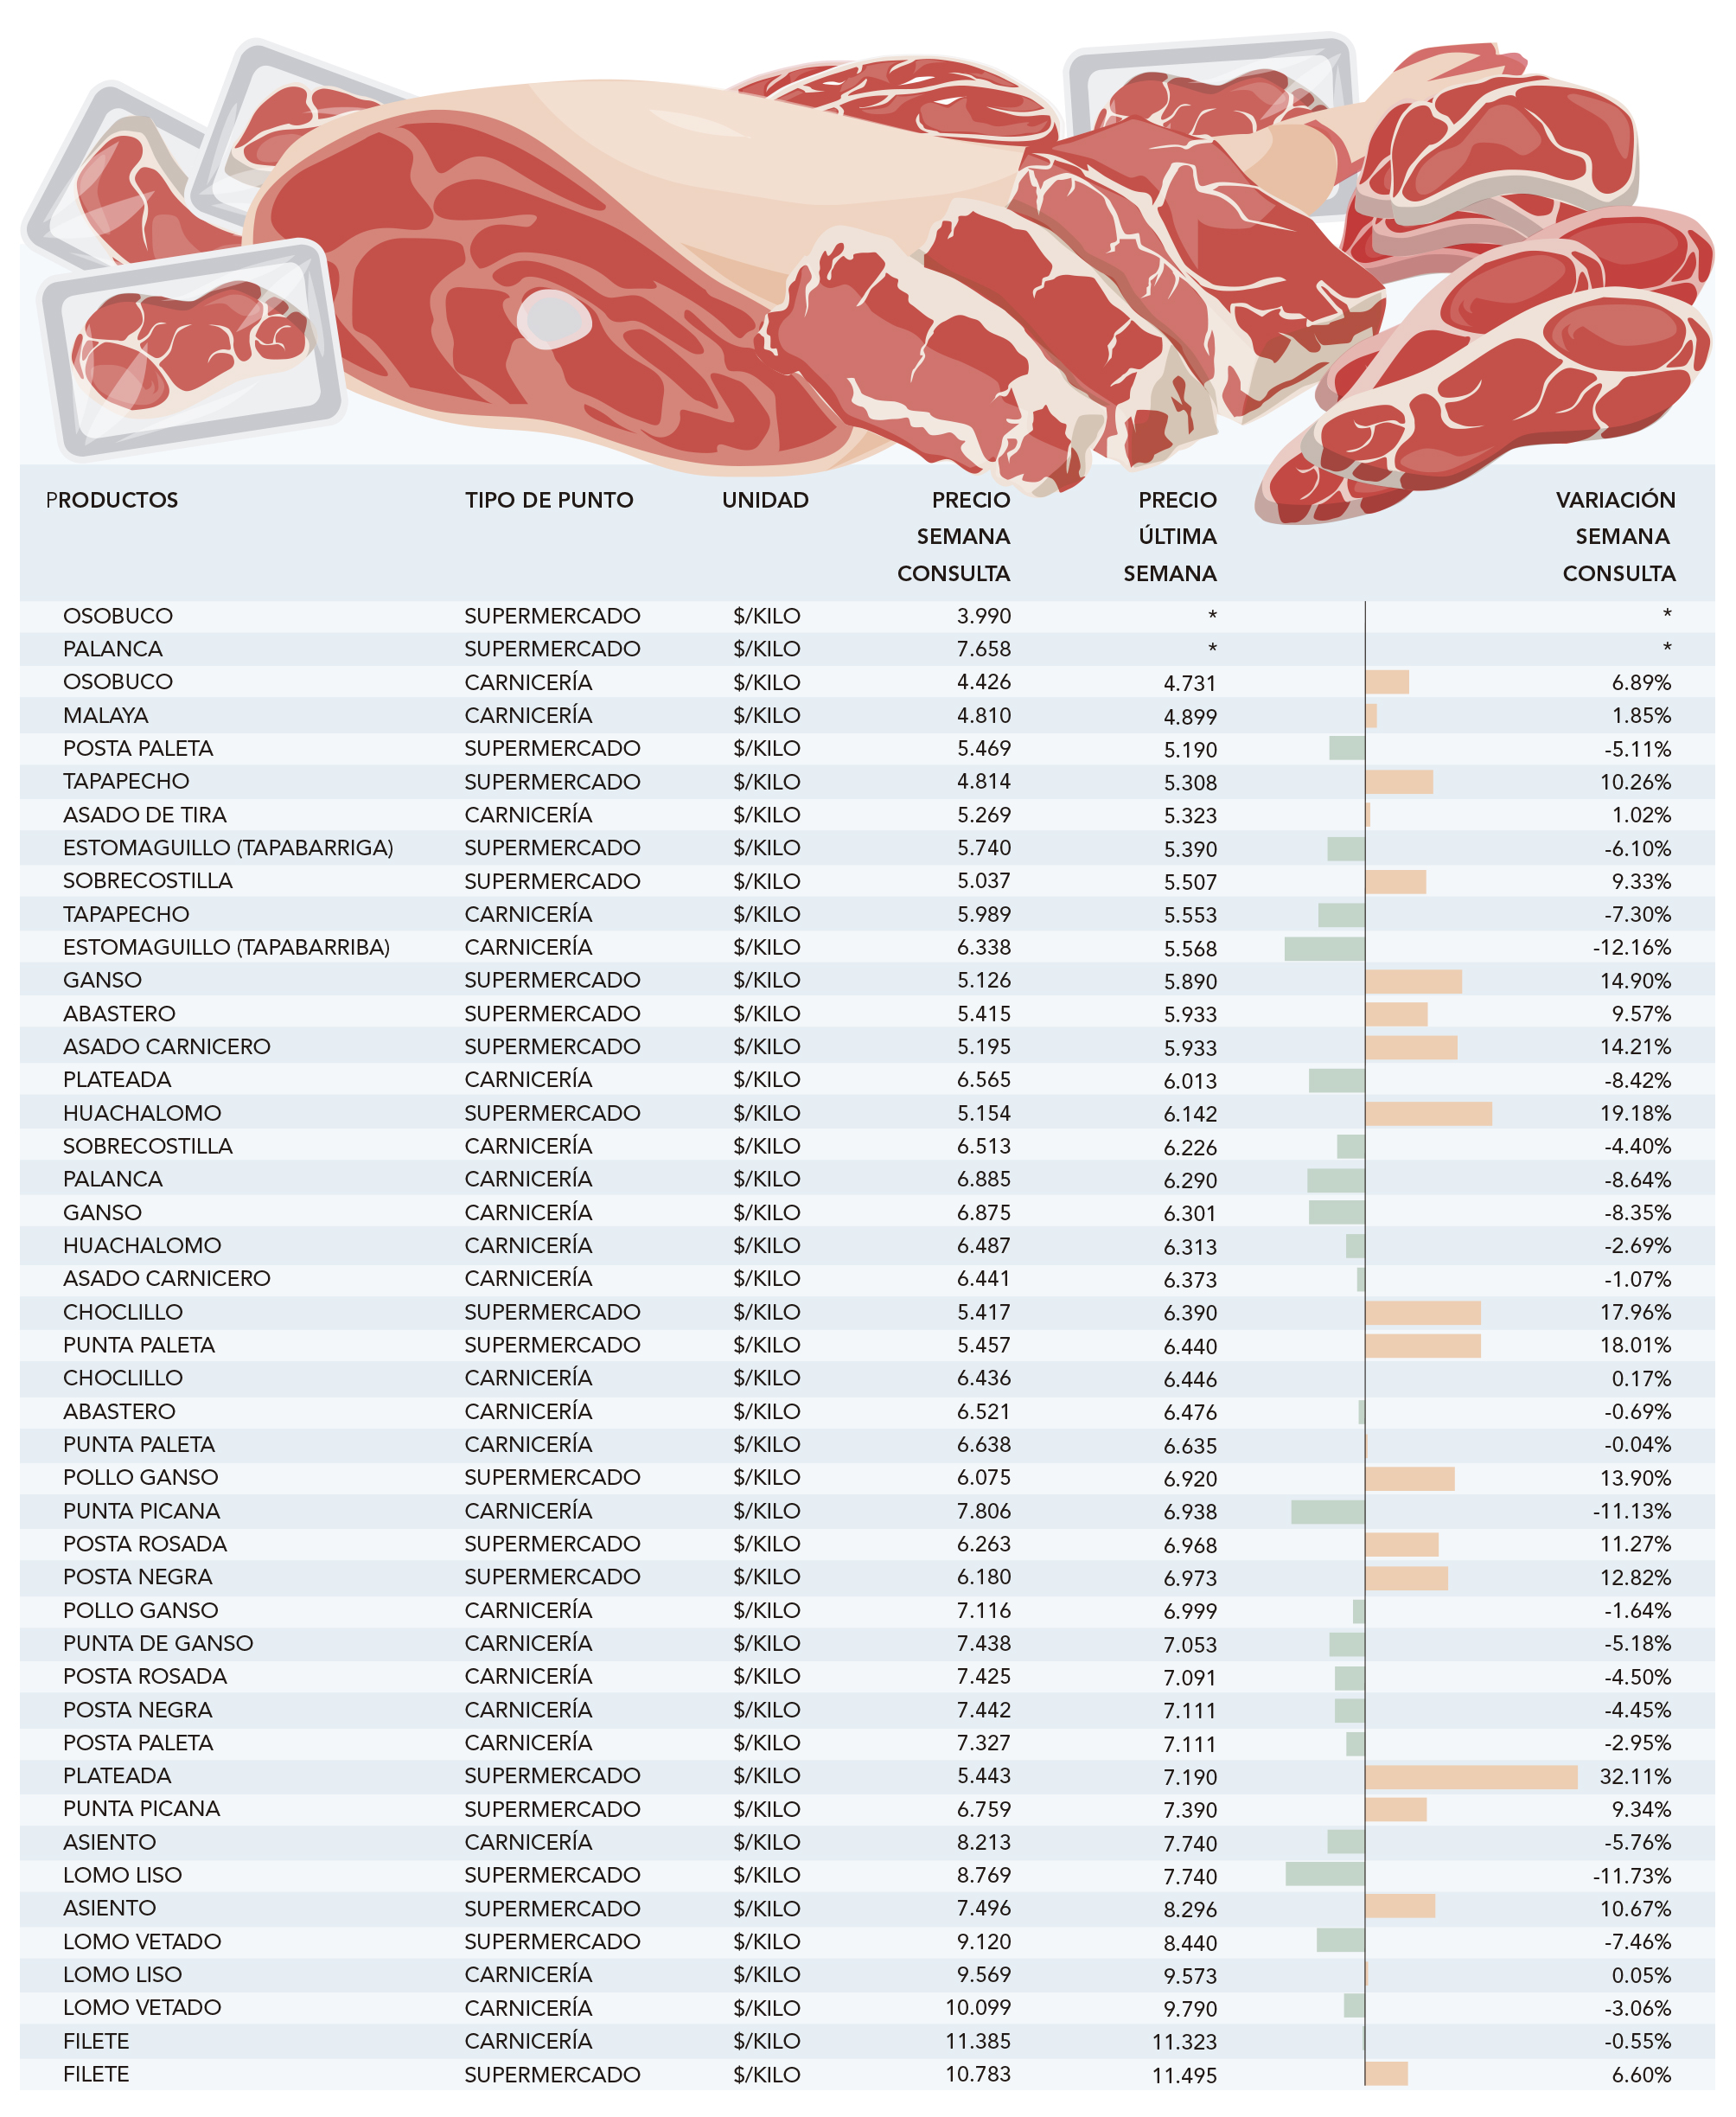 Carnes rojas supermercados registran mejores precios que carnicerías